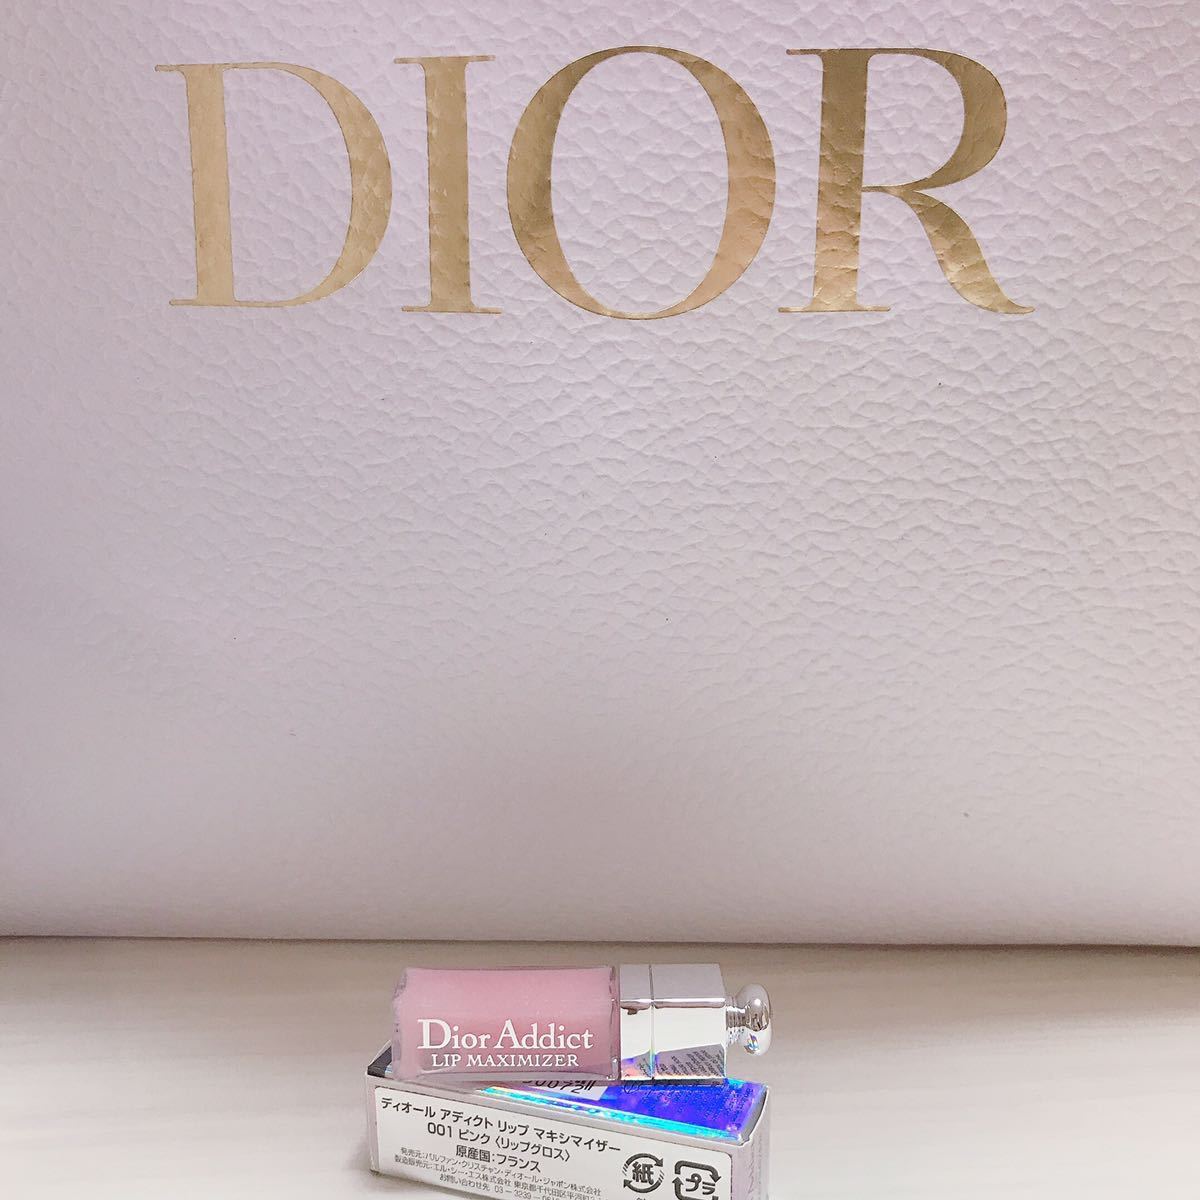 【Dior】ディオール アディクト リップ マキシマイザー 001 ピンク リップグロス 2ml×1 試供品 サンプル